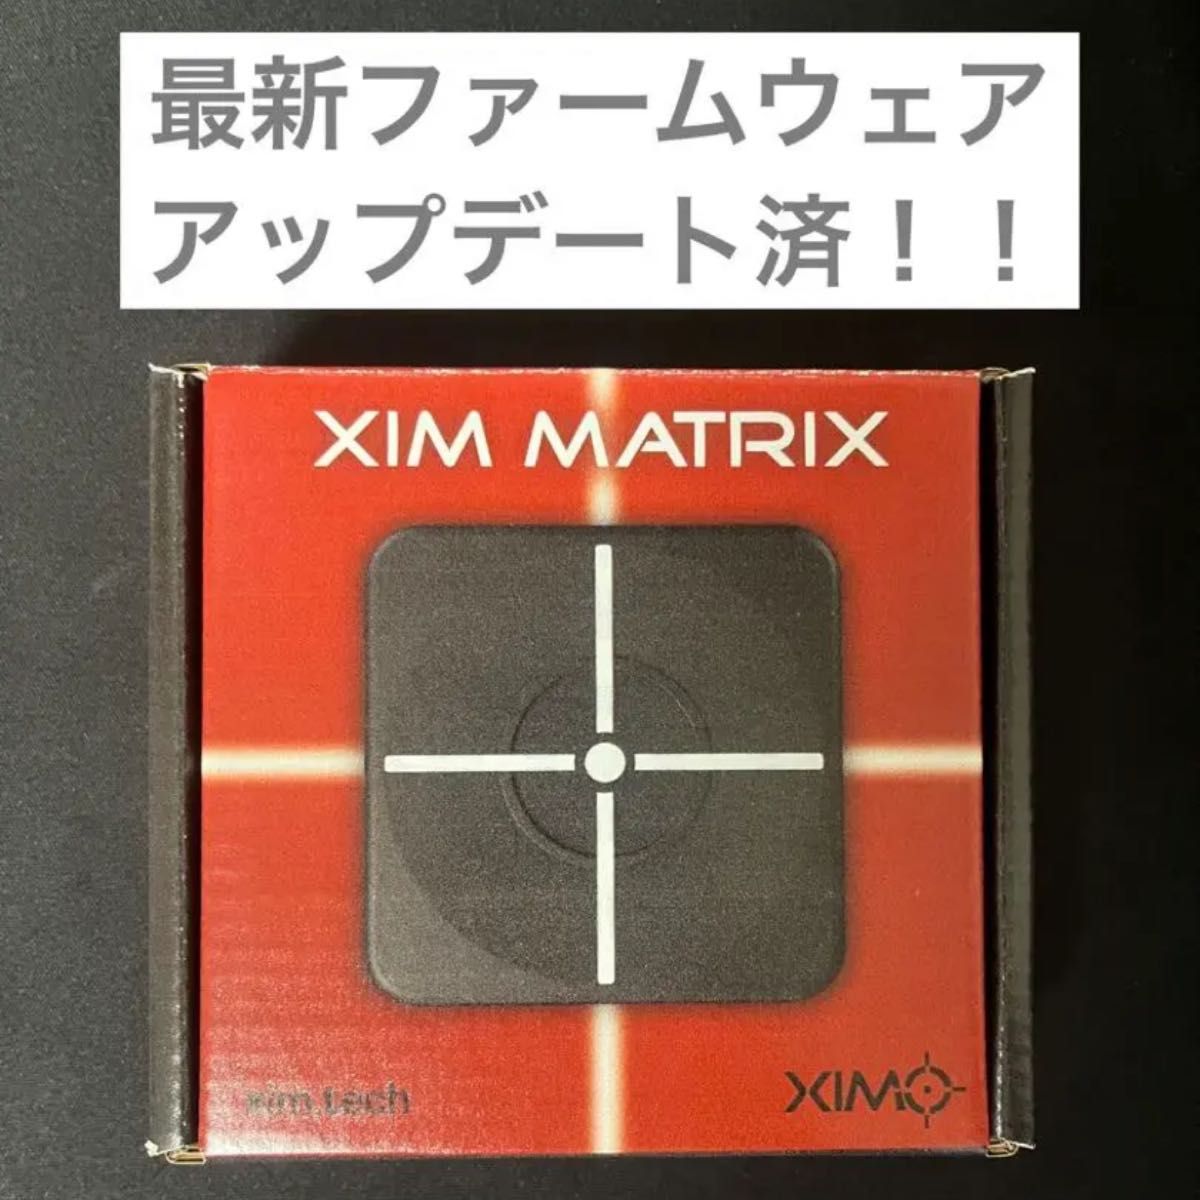 【アプデ済み】xim matrix